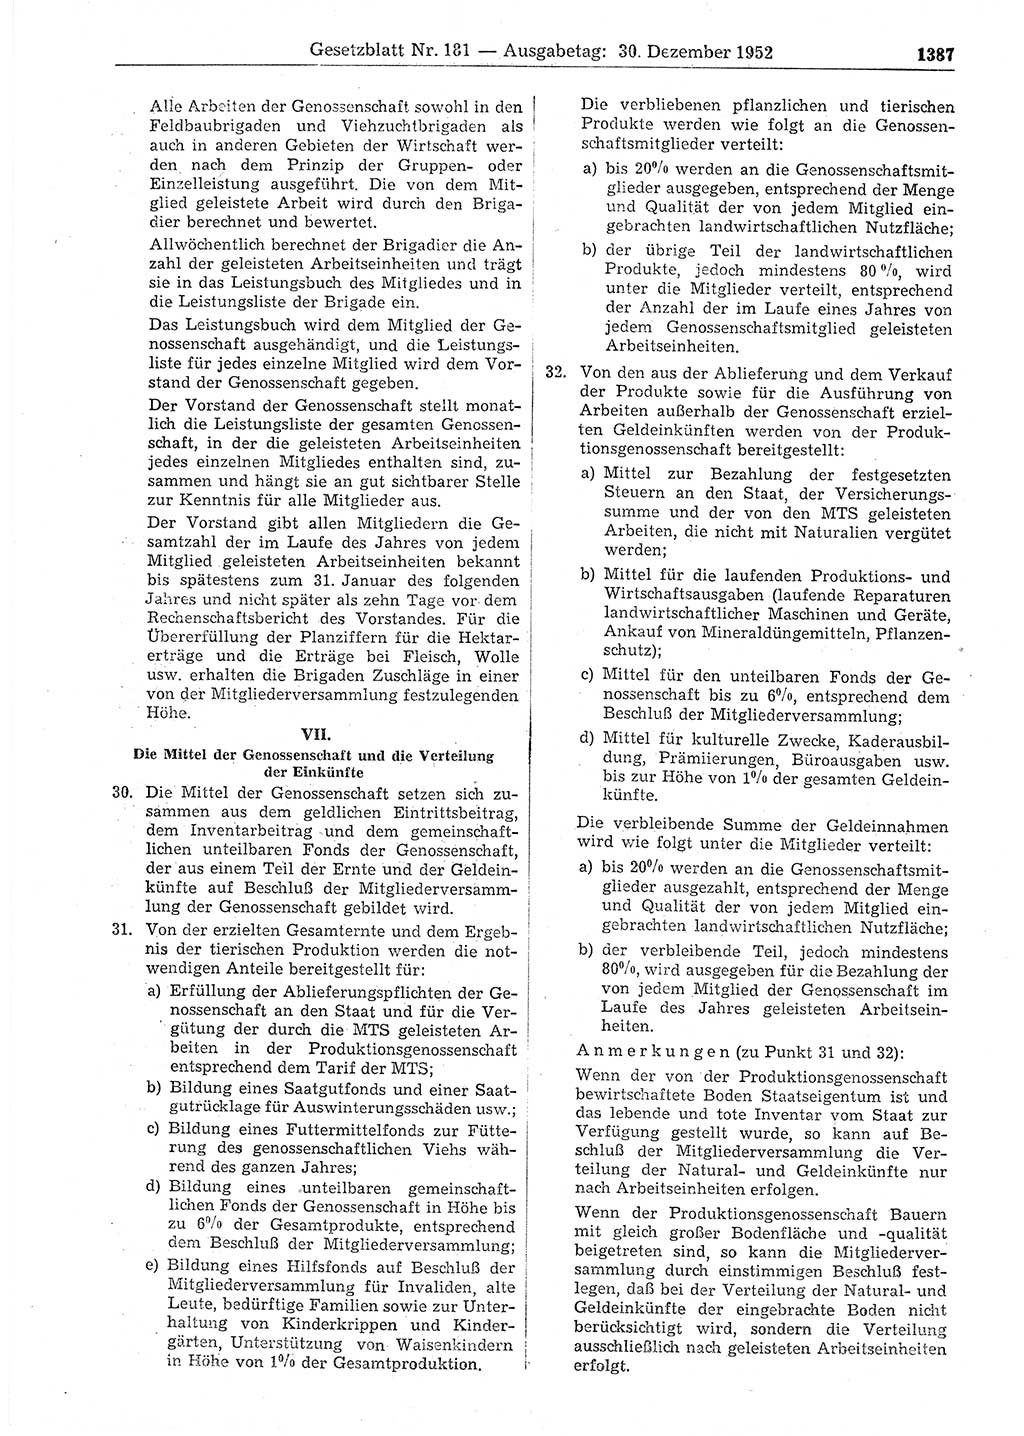 Gesetzblatt (GBl.) der Deutschen Demokratischen Republik (DDR) 1952, Seite 1387 (GBl. DDR 1952, S. 1387)